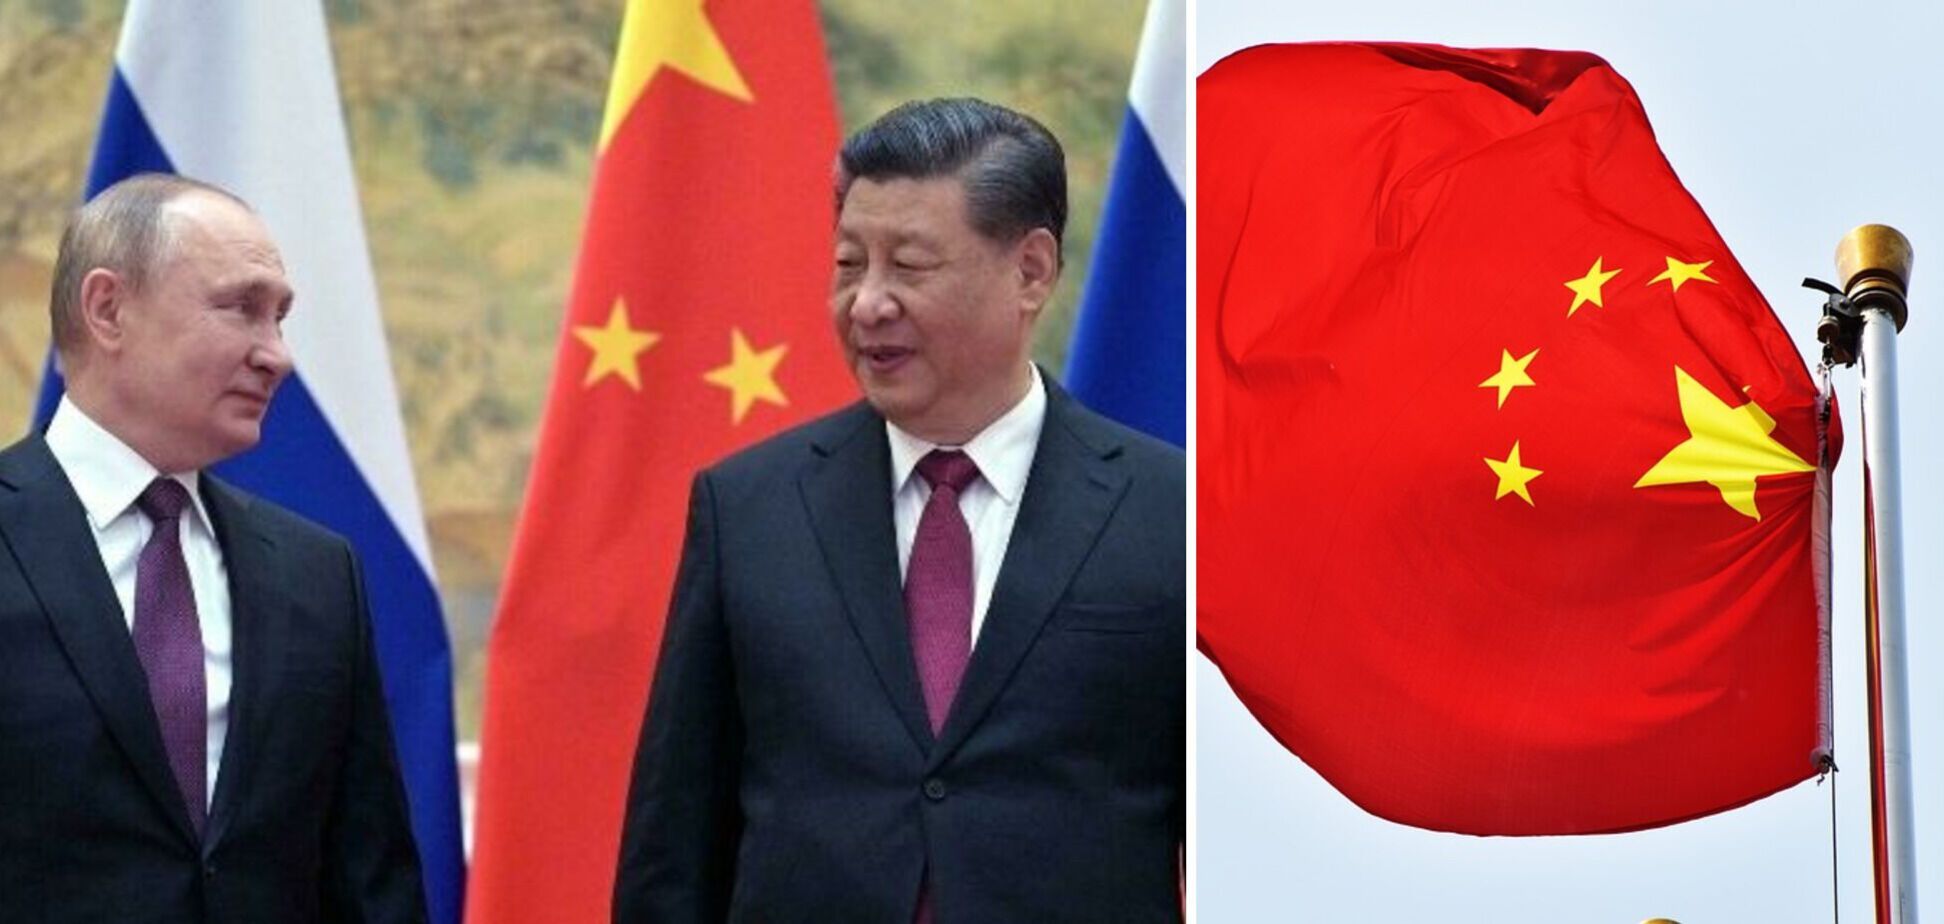 Сі Цзіньпін стежить за війною в Україні, як яструб: глава ЦРУ пояснив позицію Китаю і сказав, що найбільше турбує Путіна